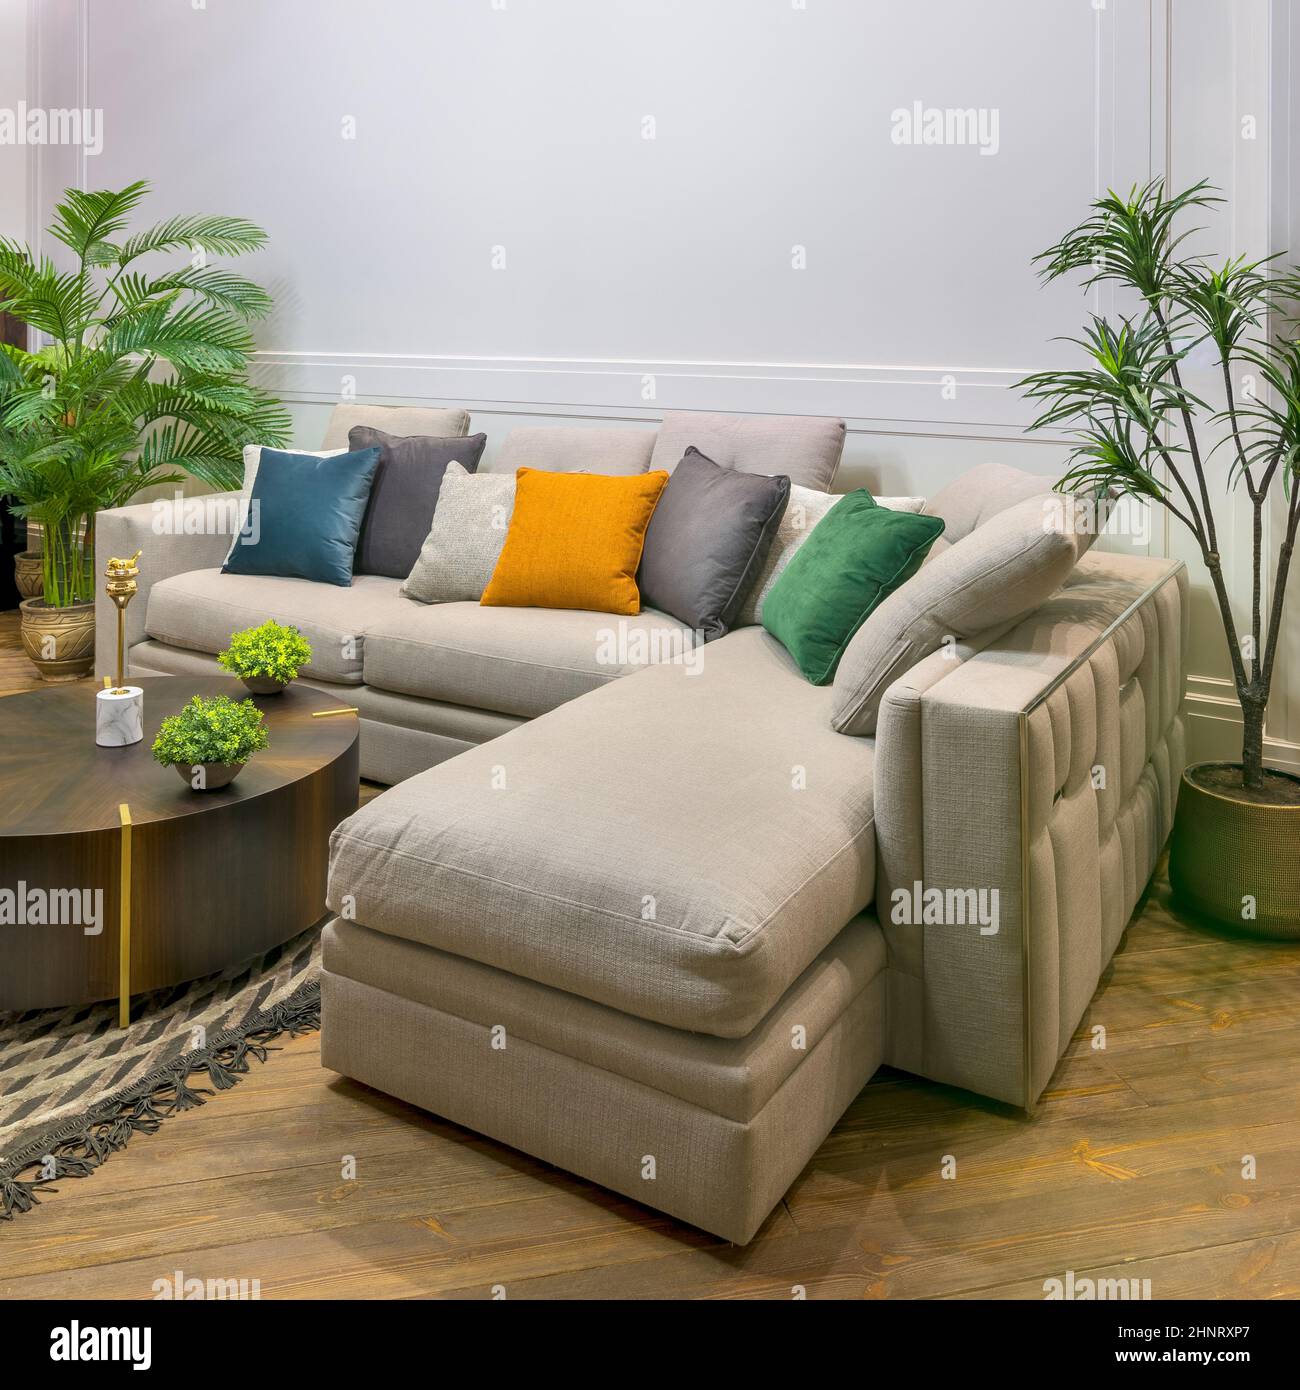 Divano grigio con cuscini colorati posti e tavolo su tappeto in spaziosa  camera moderna con poltrone e piante in vaso verde Foto stock - Alamy